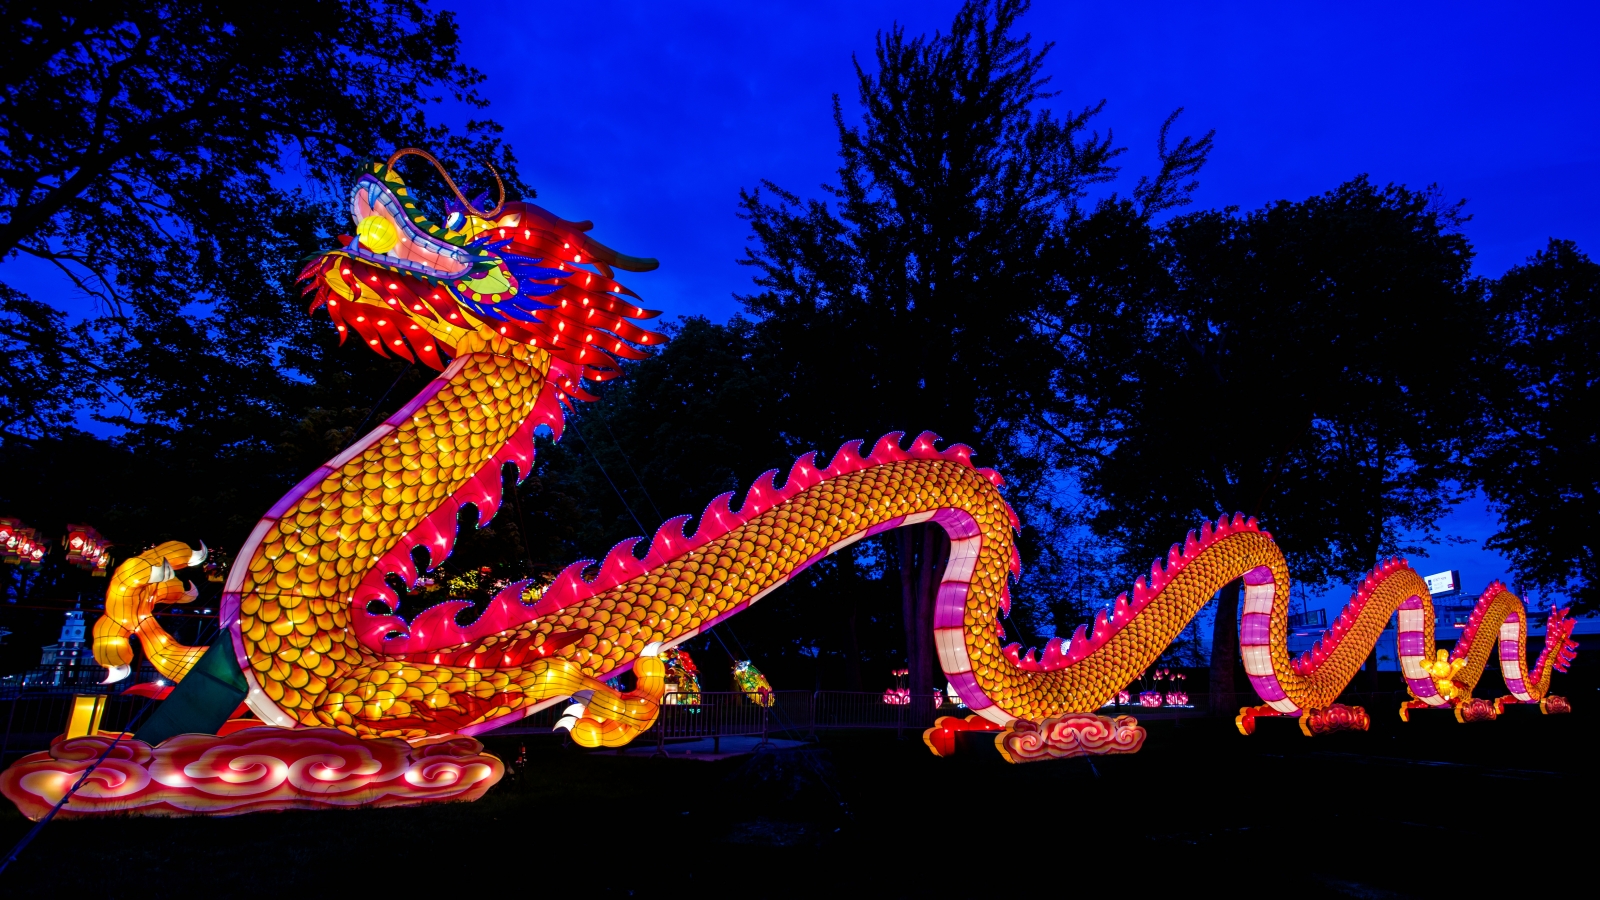 Chinese Lantern Festival 2019 In Philadelphia S Franklin - Philadelphia Chinese Lantern Festival 2019 - HD Wallpaper 